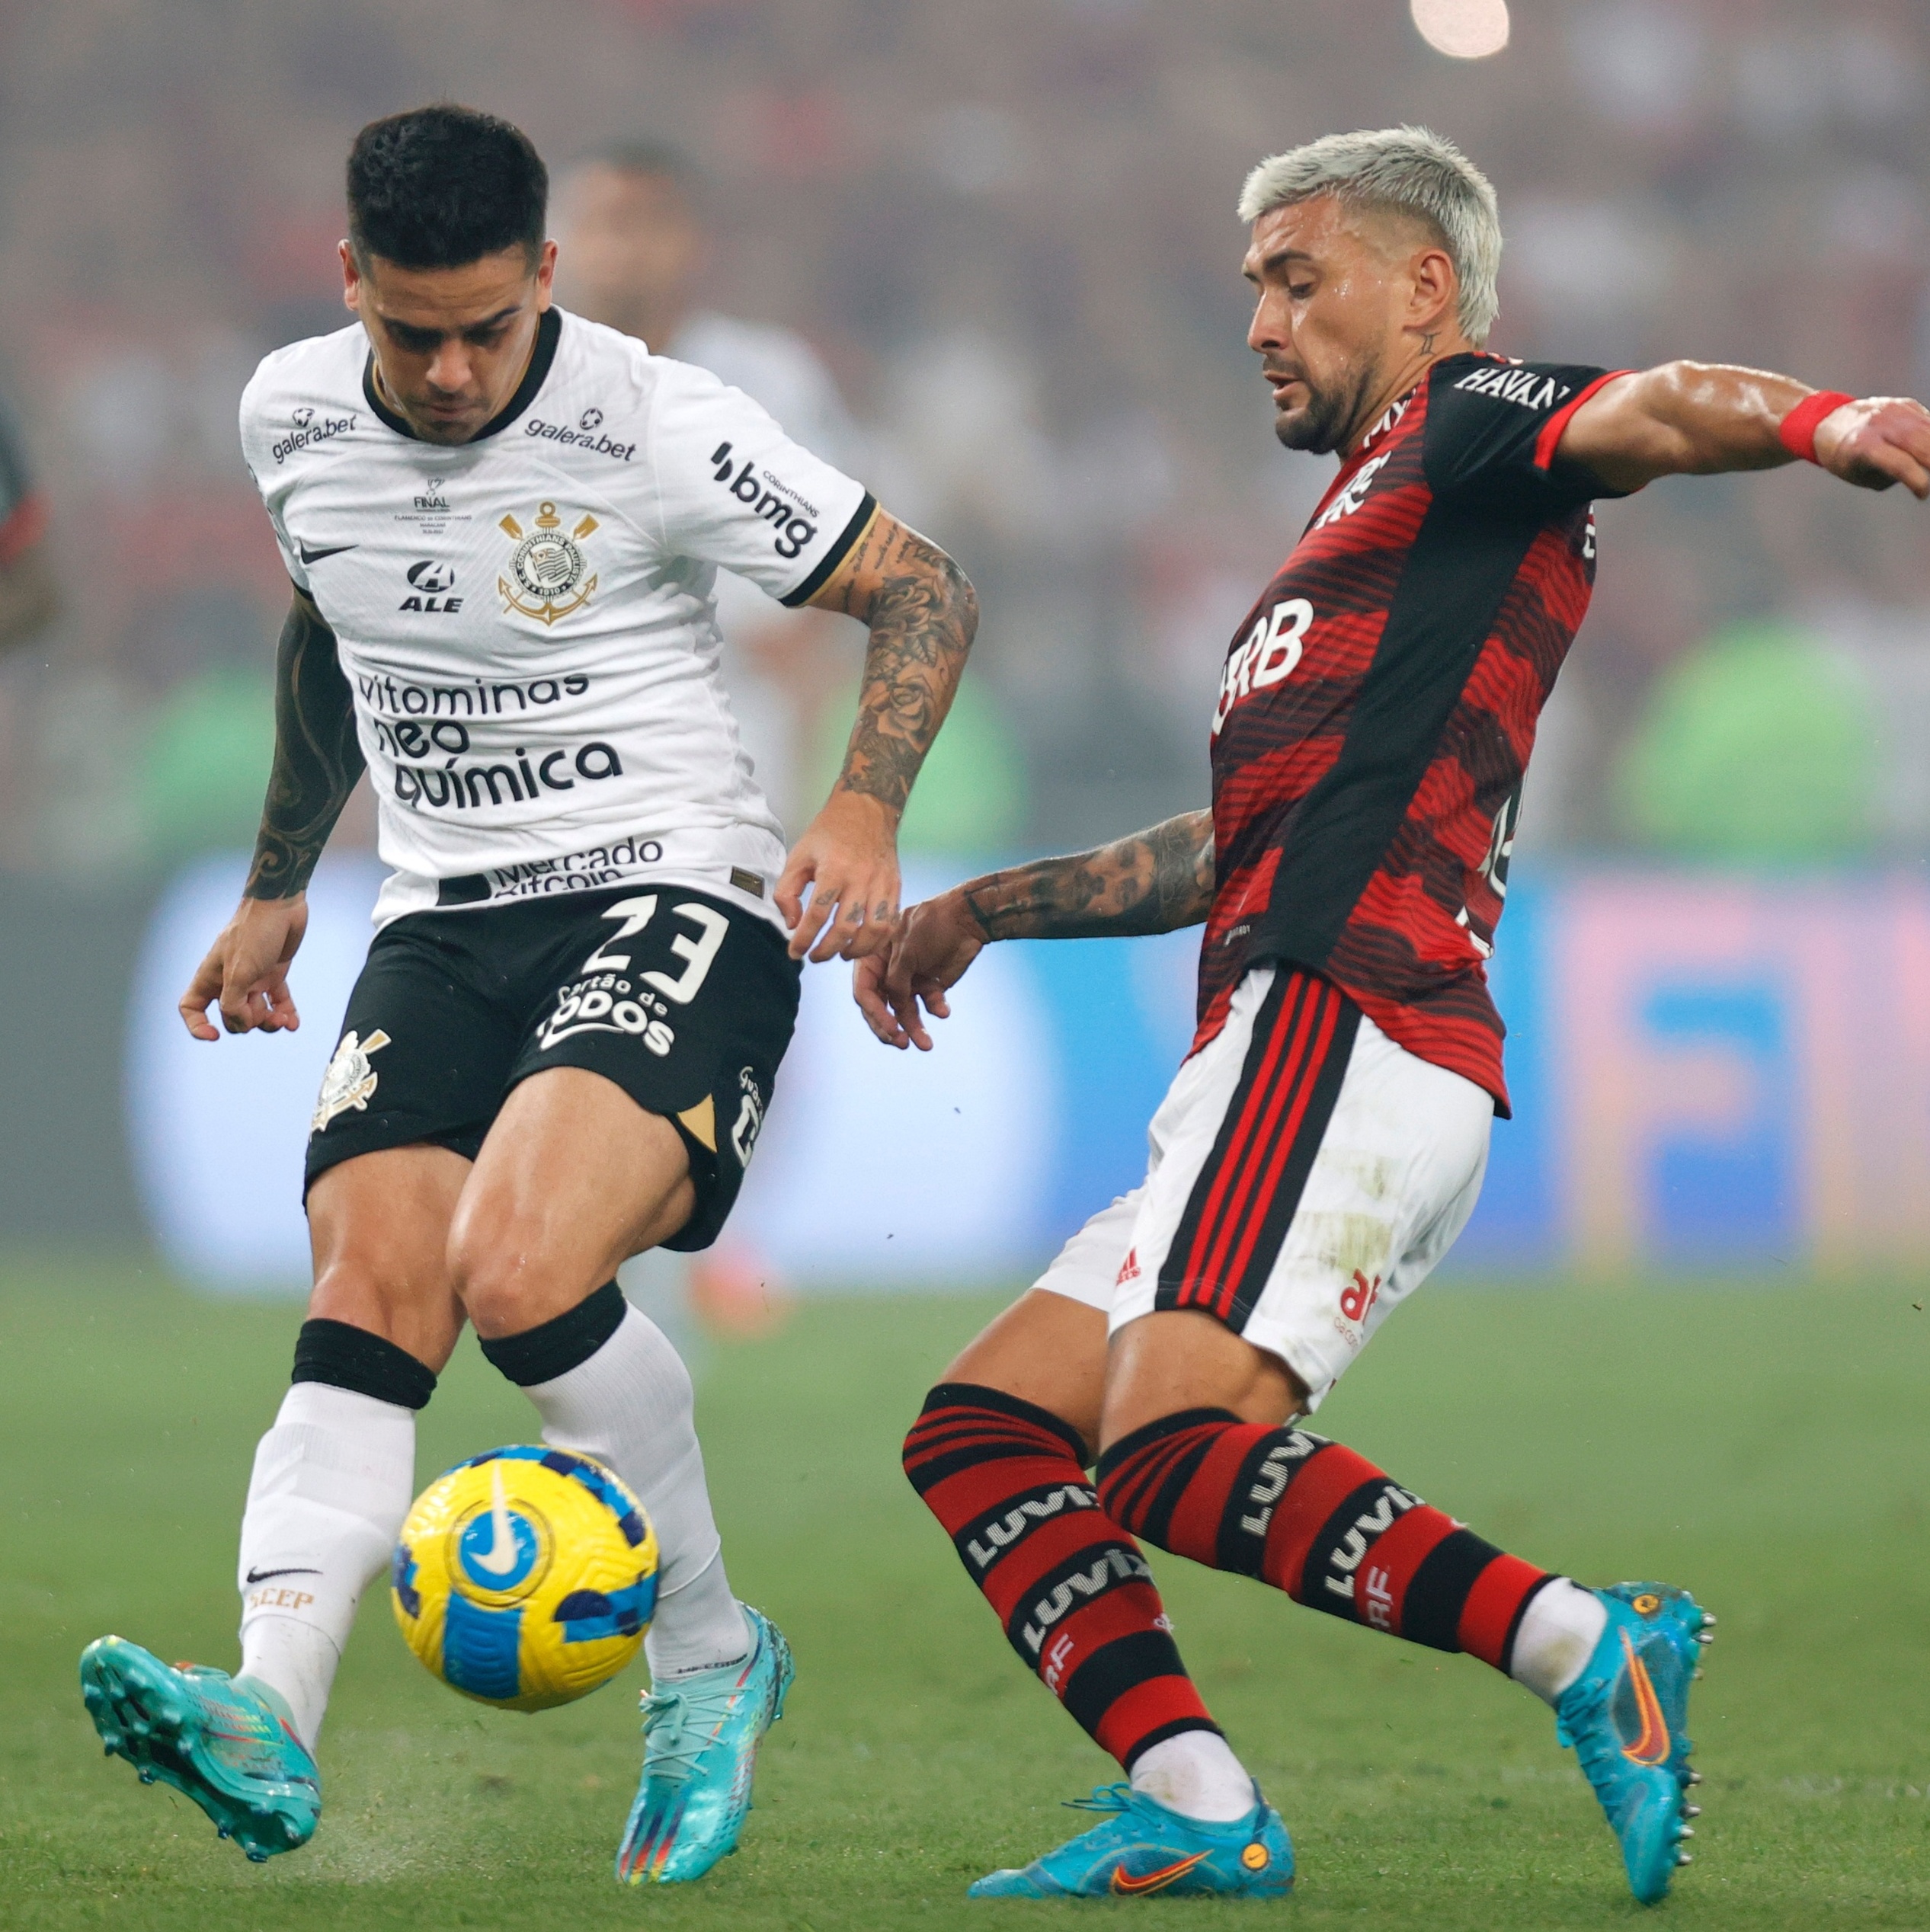 Flamengo Vs Corinthians qual vcs preferem?? #flamengo #vs #vschalleng